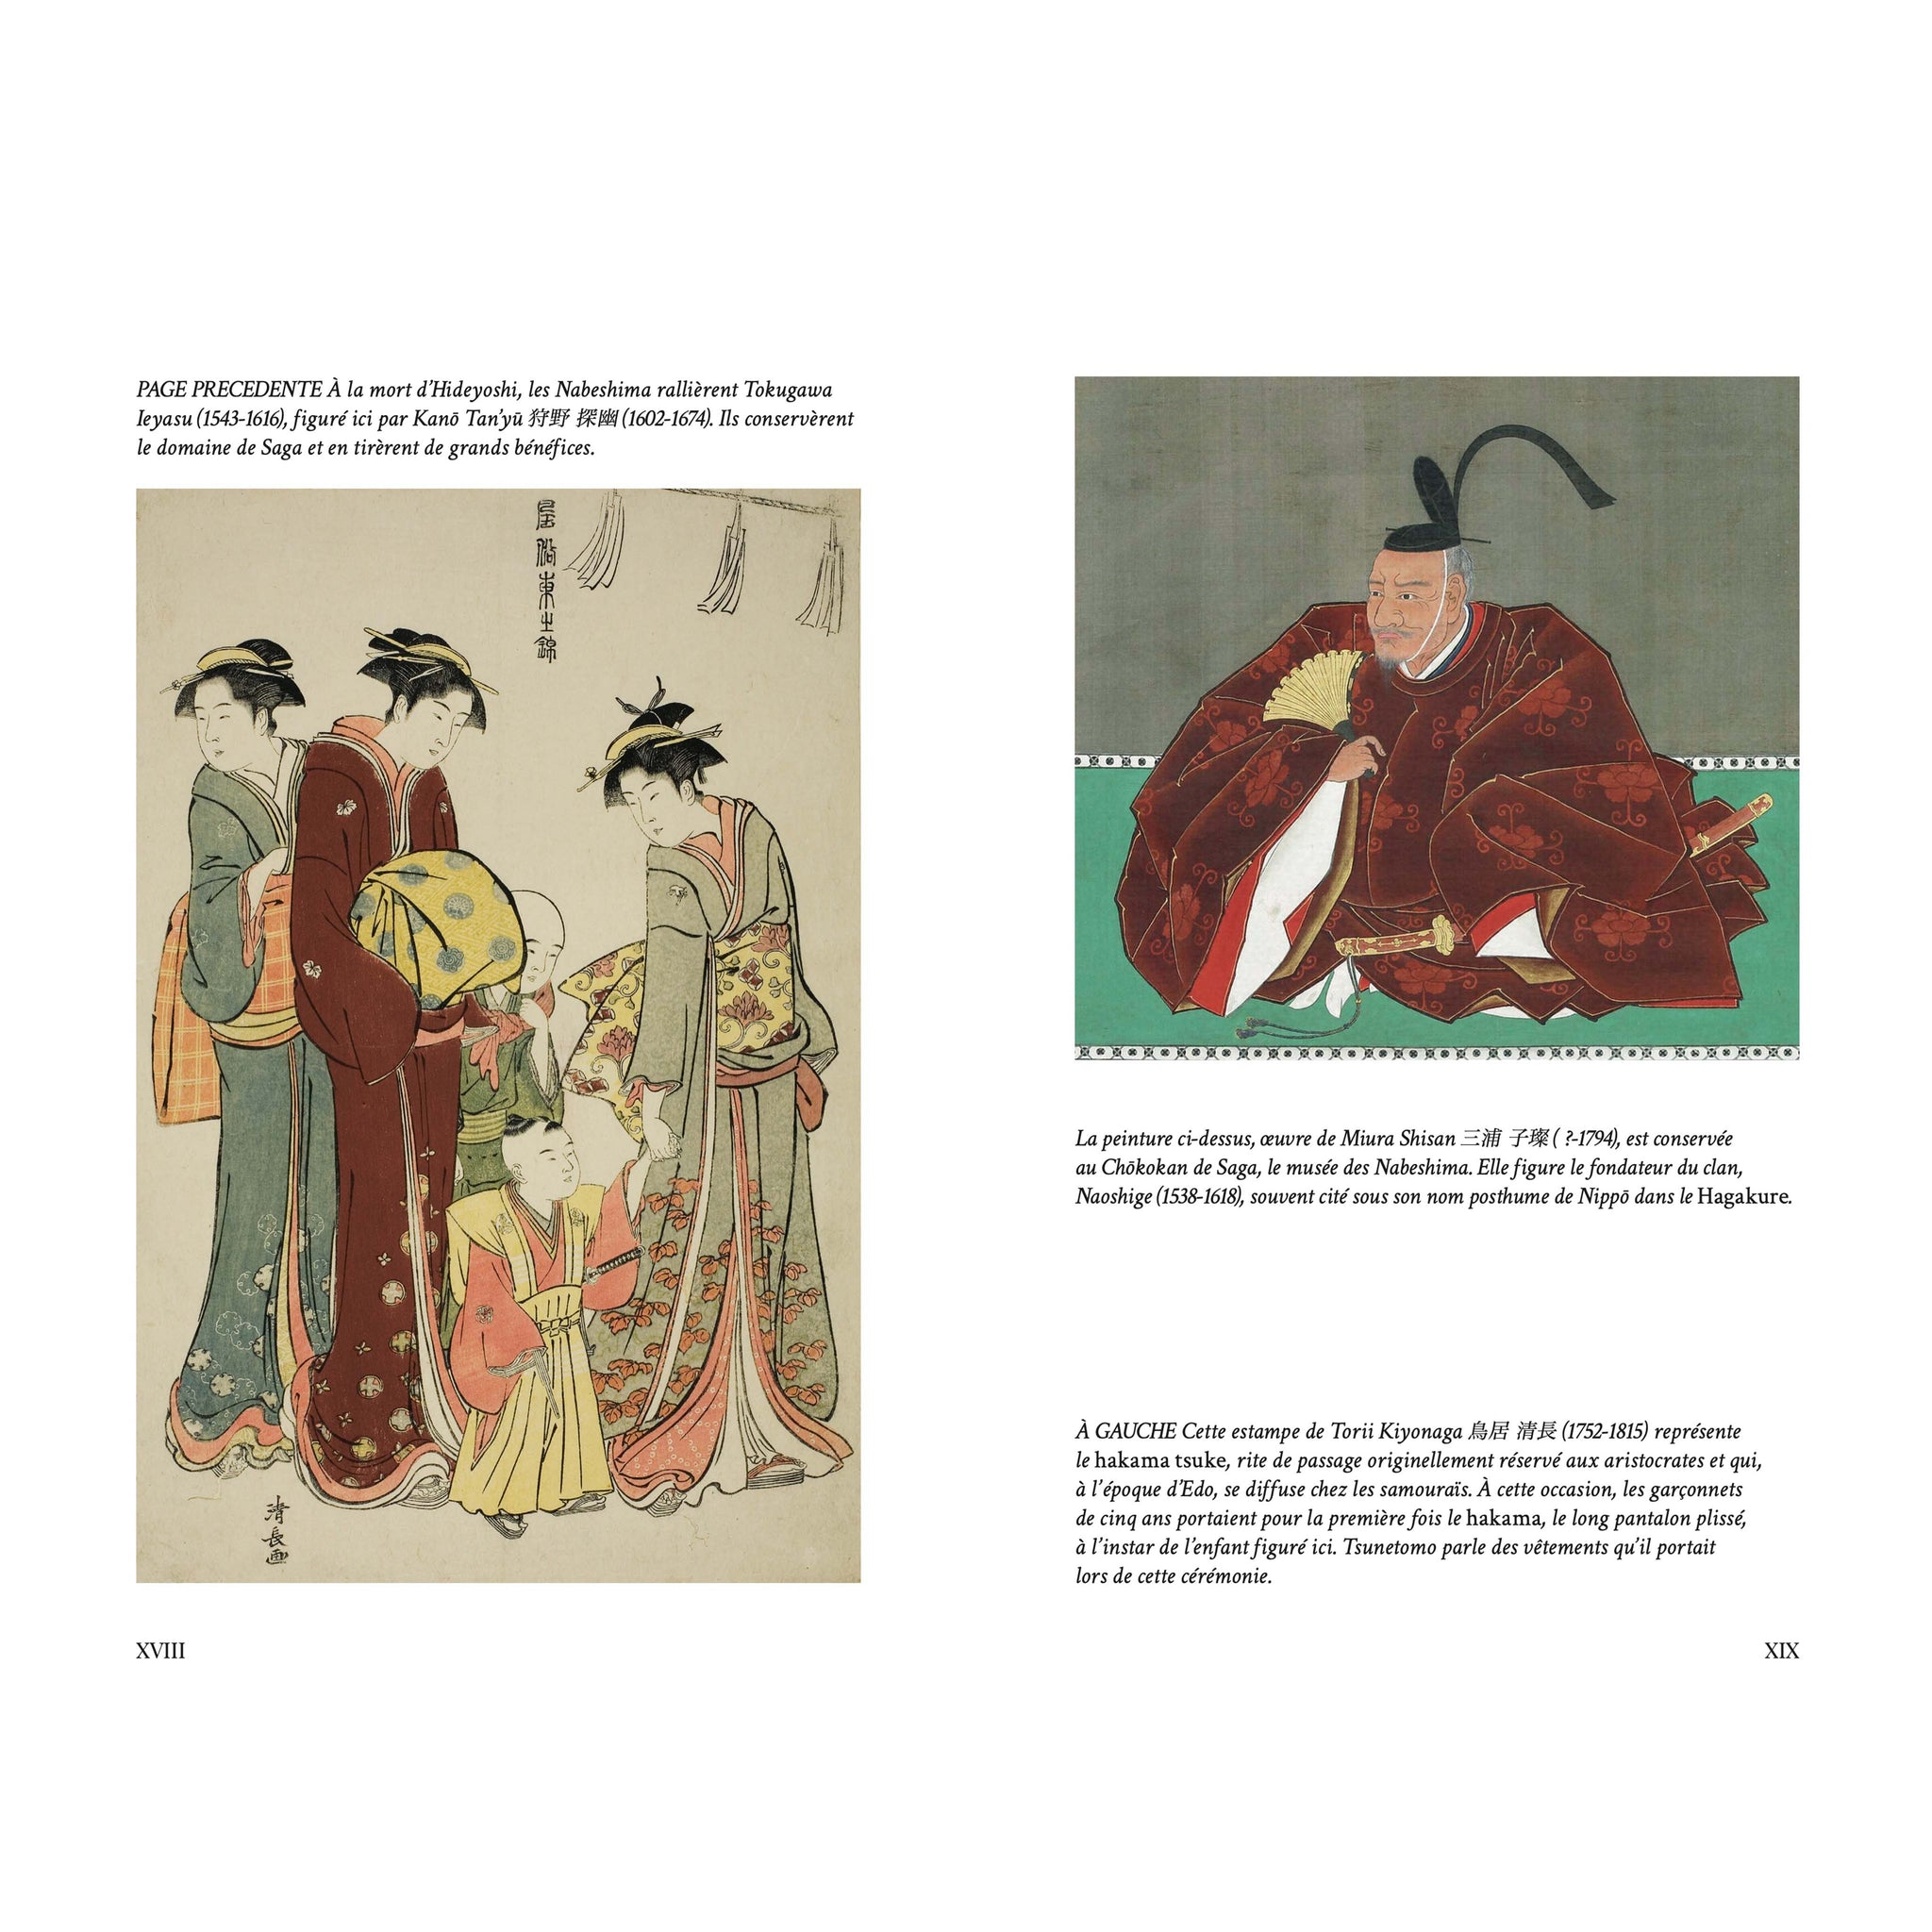 Hagakure - Vivre et mourir en samouraï